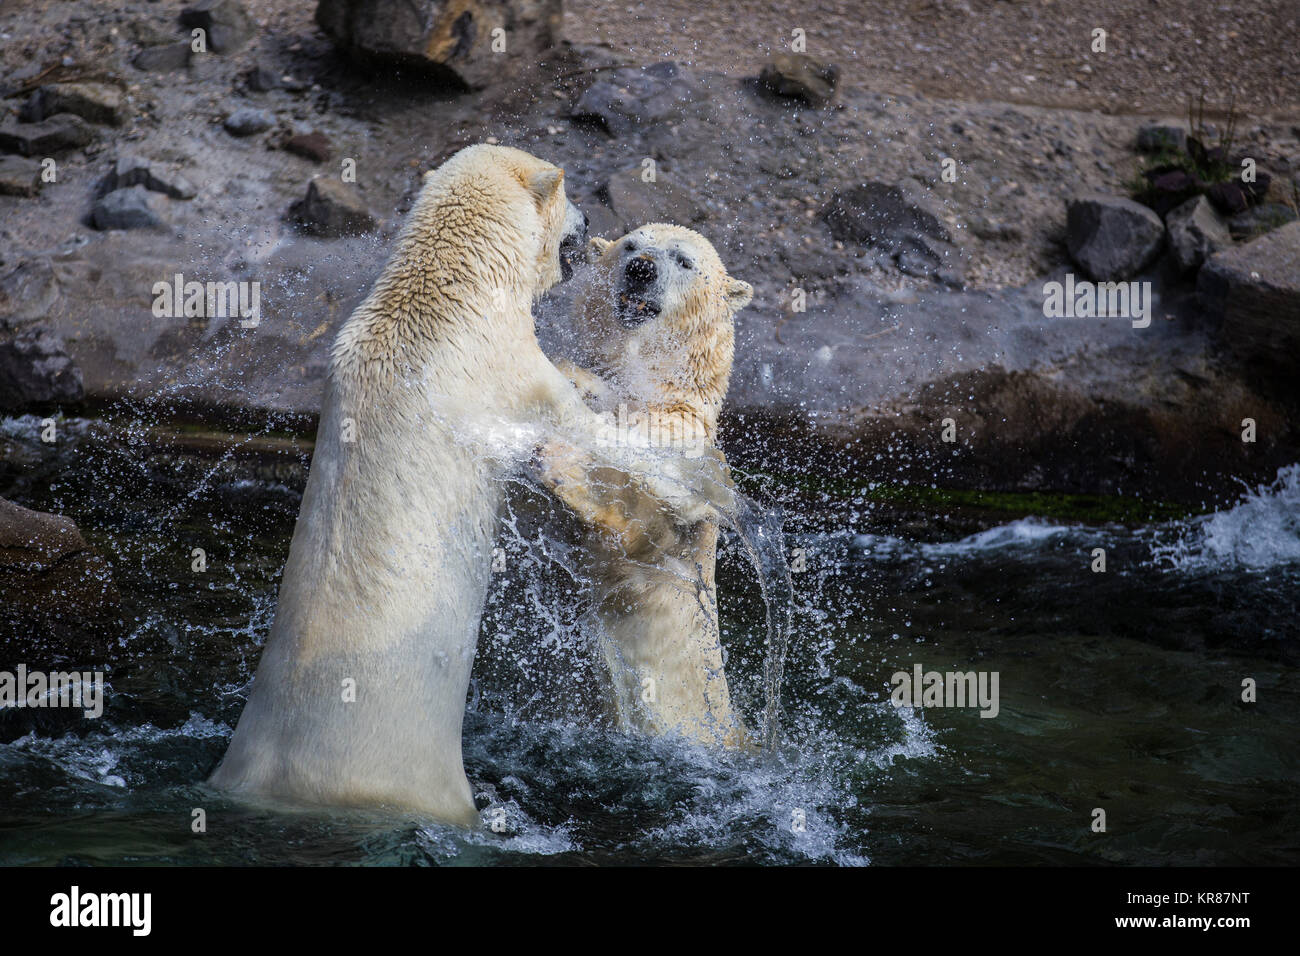 Deux mineurs respectivement 500kg des ours polaires à jouer dans la lutte contre Hanovre zoo aventure Banque D'Images